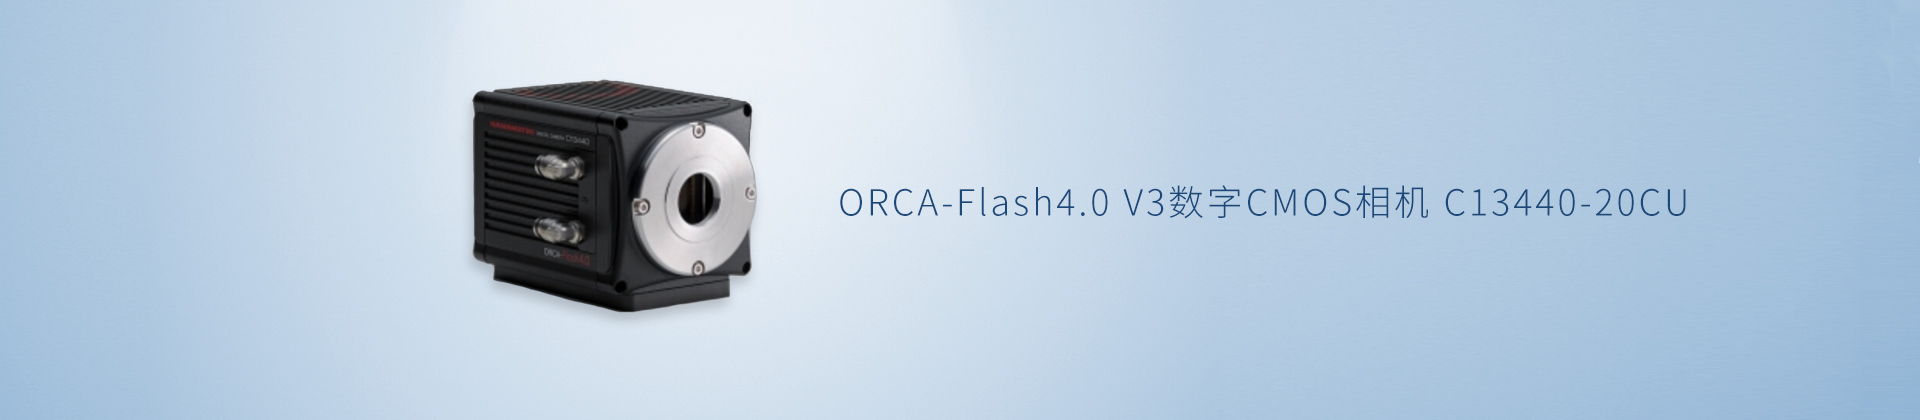 ORCA-Flash4.0 V3数字CMOS相机 C13440-20CU